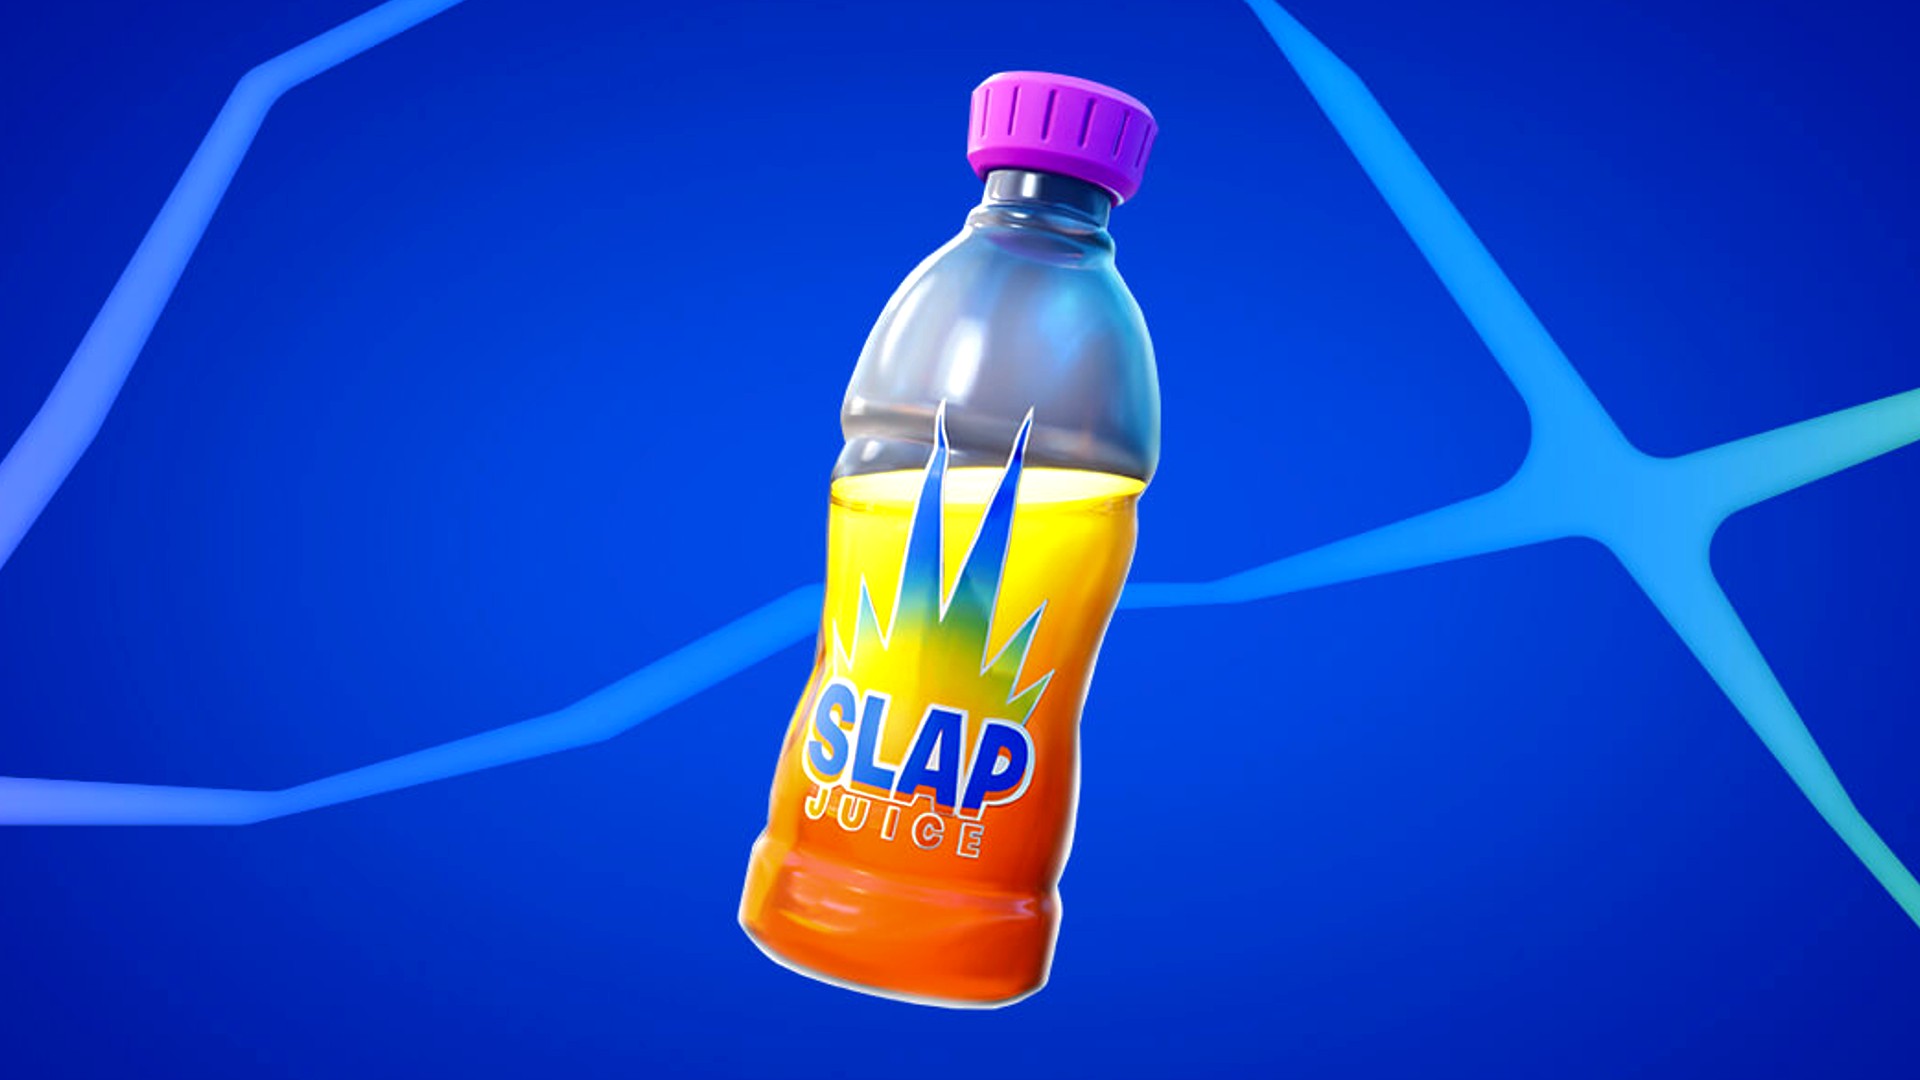 Fortnite Slap Juice bottle